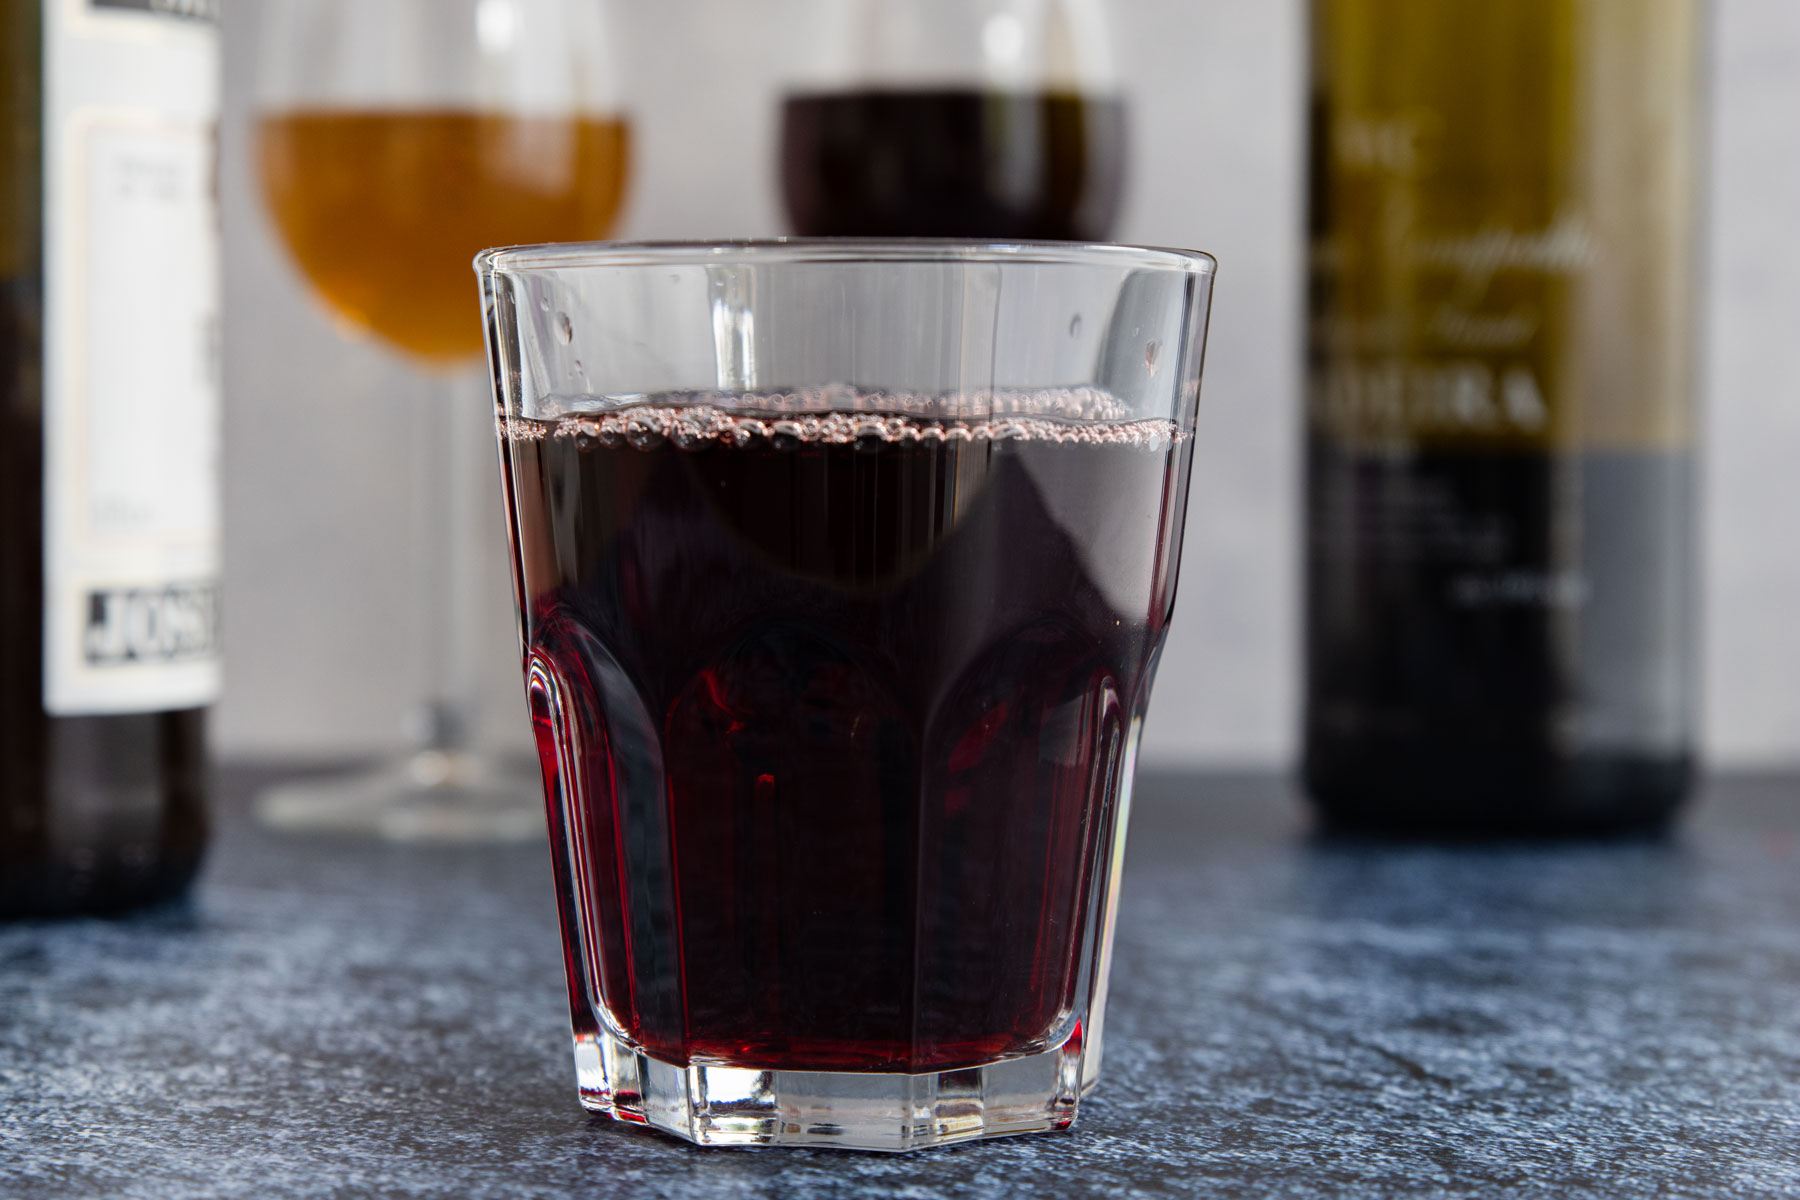 Traubensaft als alkoholfreie Alternative zu Portwein